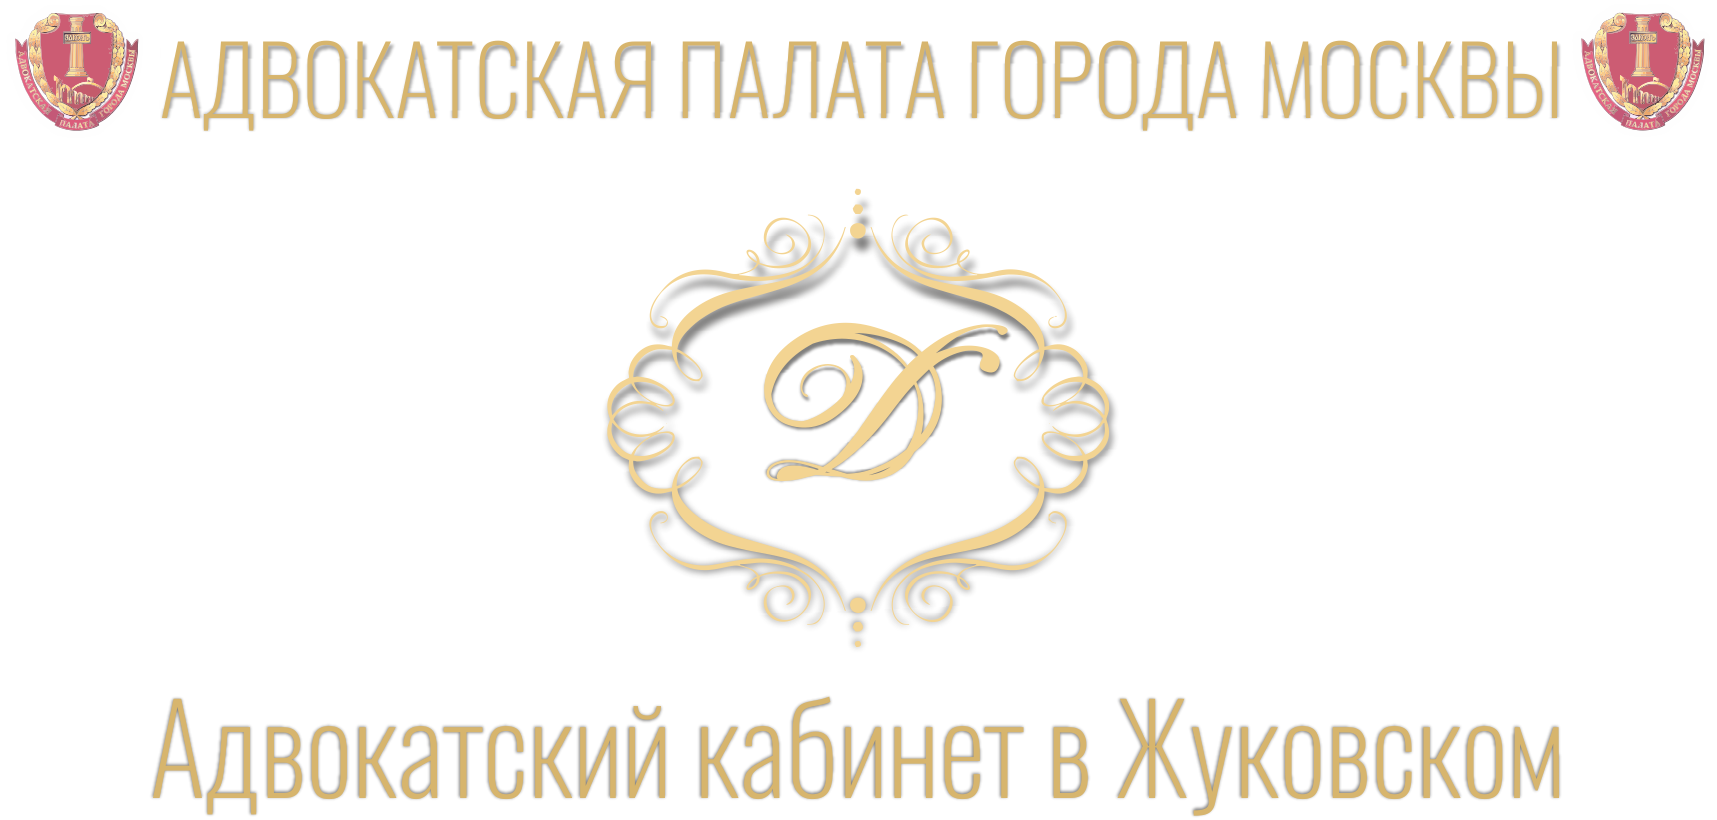 Адвокатская палата адвокатский кабинет. Адвокатский кабинет эмблема. Адвокатская палата Московской области логотип вектор.